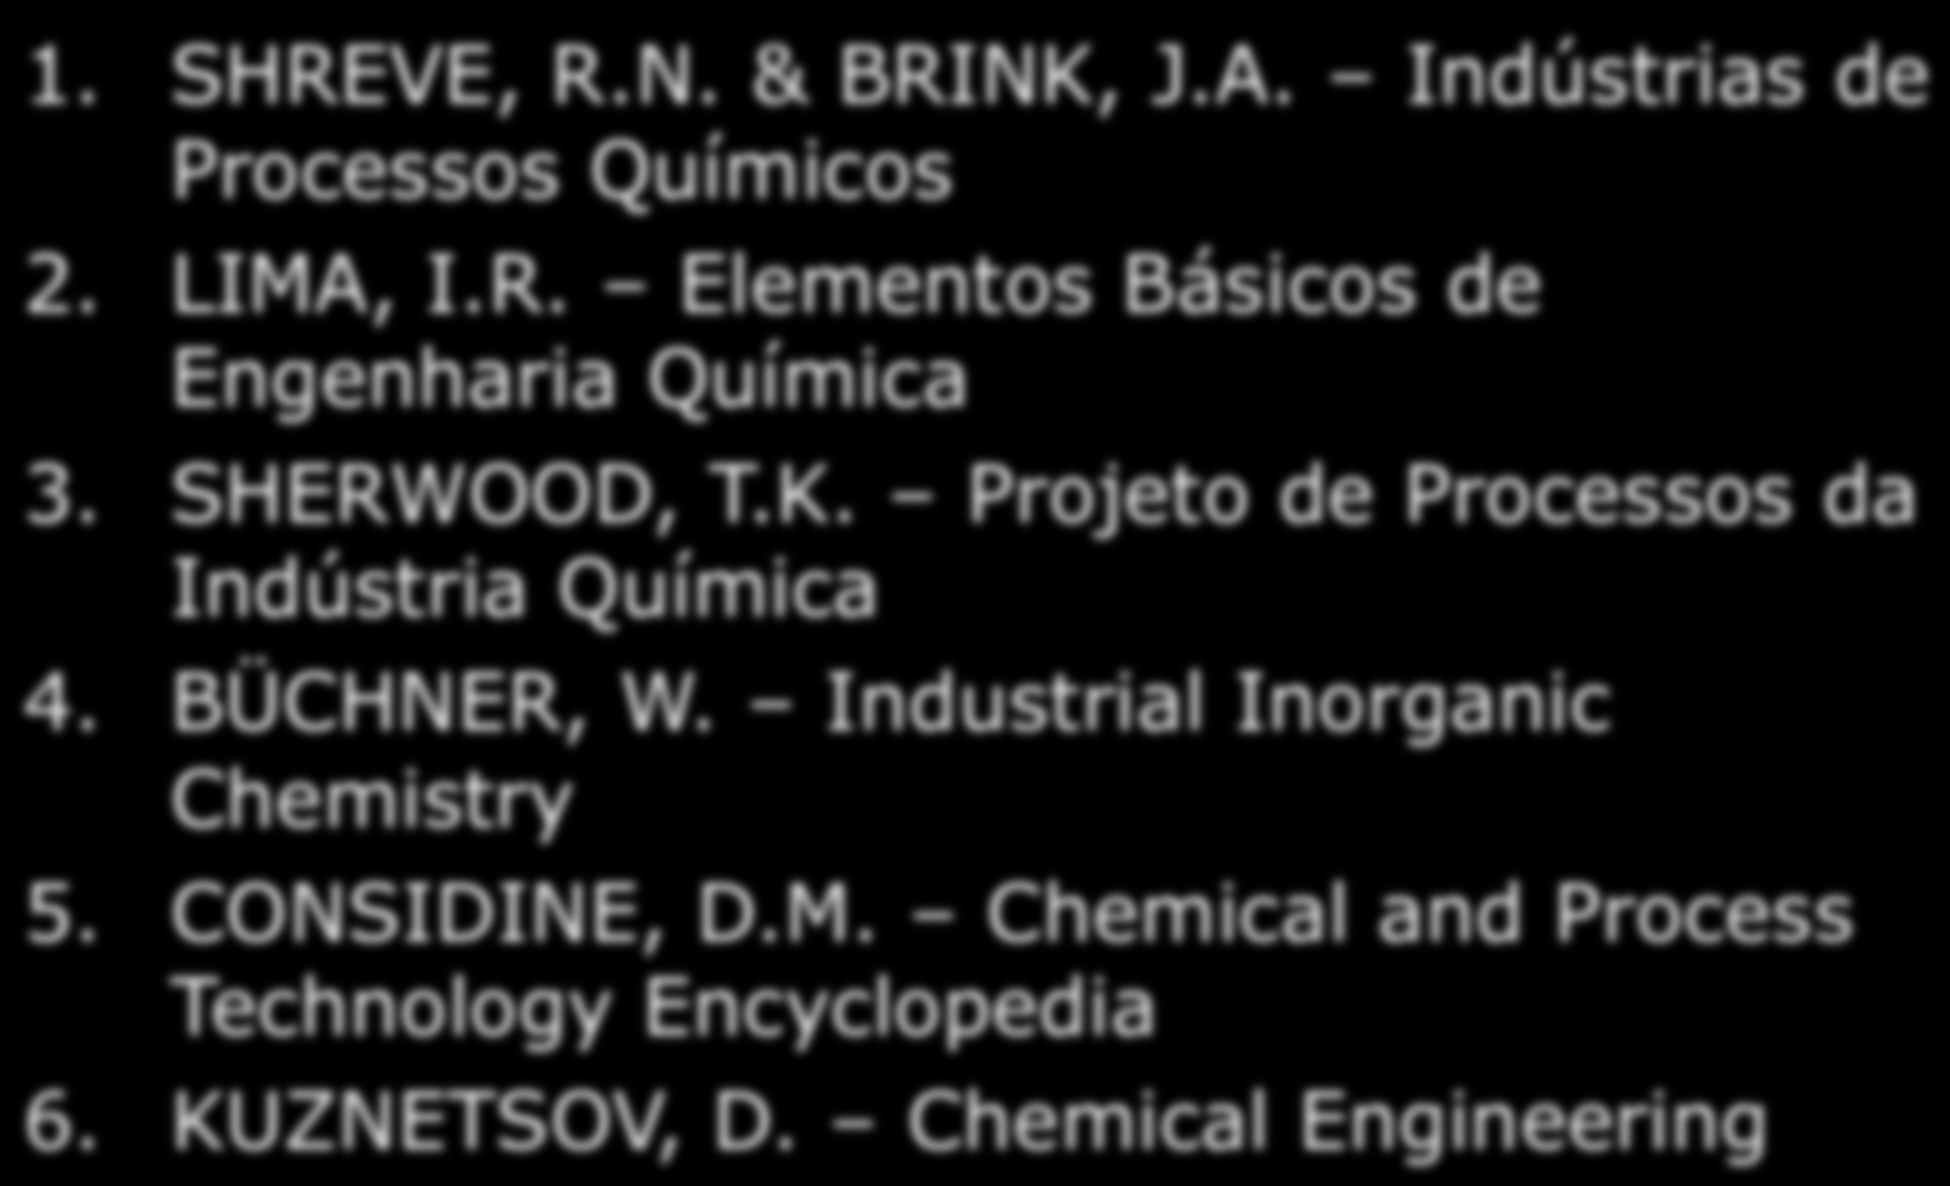 REFERÊNCIAS BIBLIOGRÁFICAS 1. SHREVE, R.N. & BRINK, J.A. Indústrias de Processos Químicos 2. LIMA, I.R. Elementos Básicos de Engenharia Química 3. SHERWOOD, T.K. Projeto de Processos da Indústria Química 4.